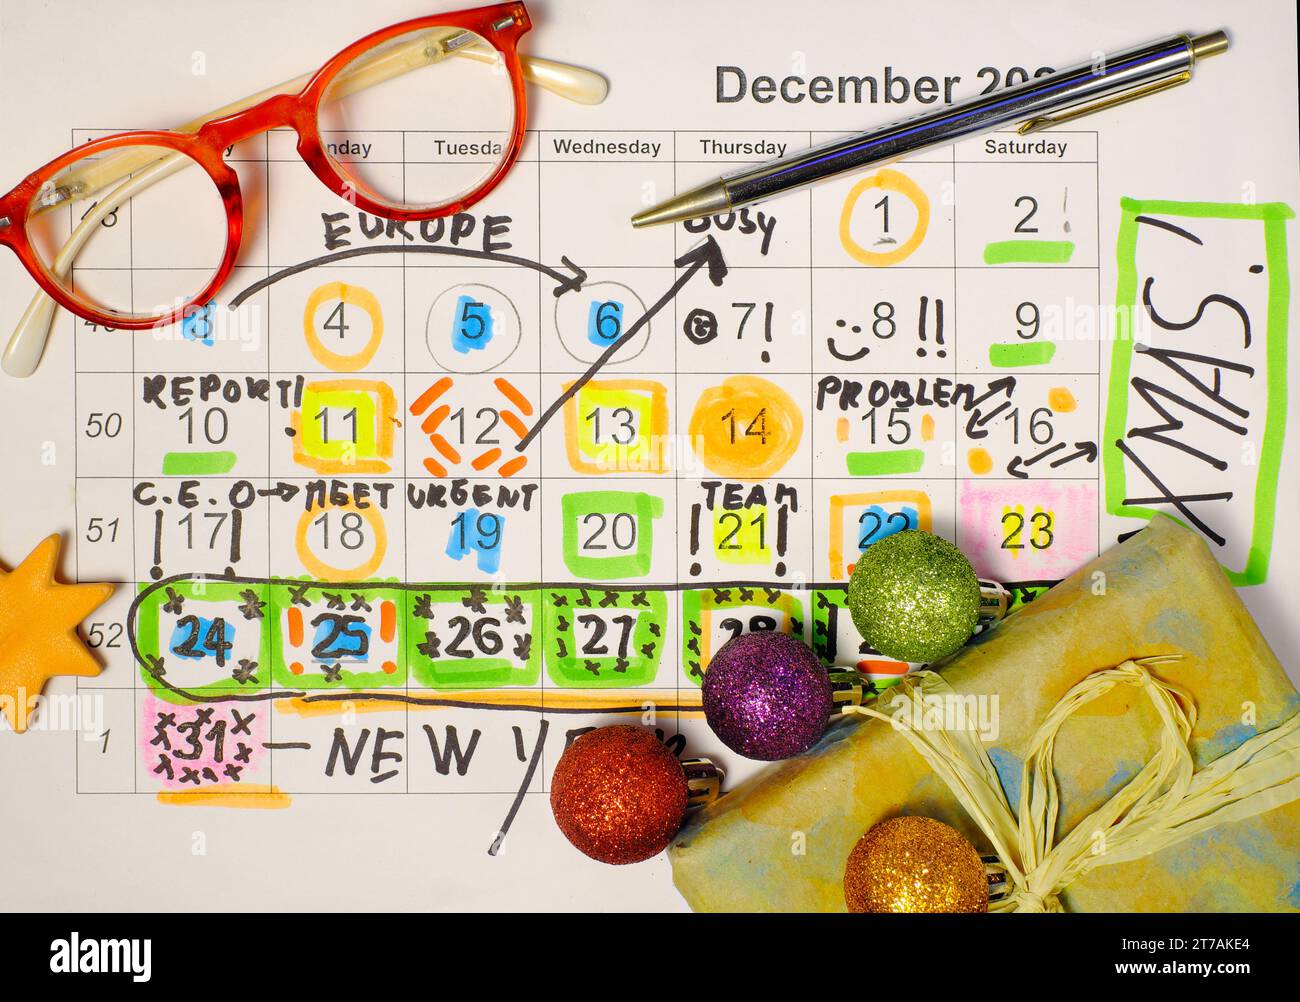 Kalender mit Geschäftsterminen, Einträgen zu weihnachtsferien, weihnachtsbällen und weihnachtsgeschenken. Stockfoto